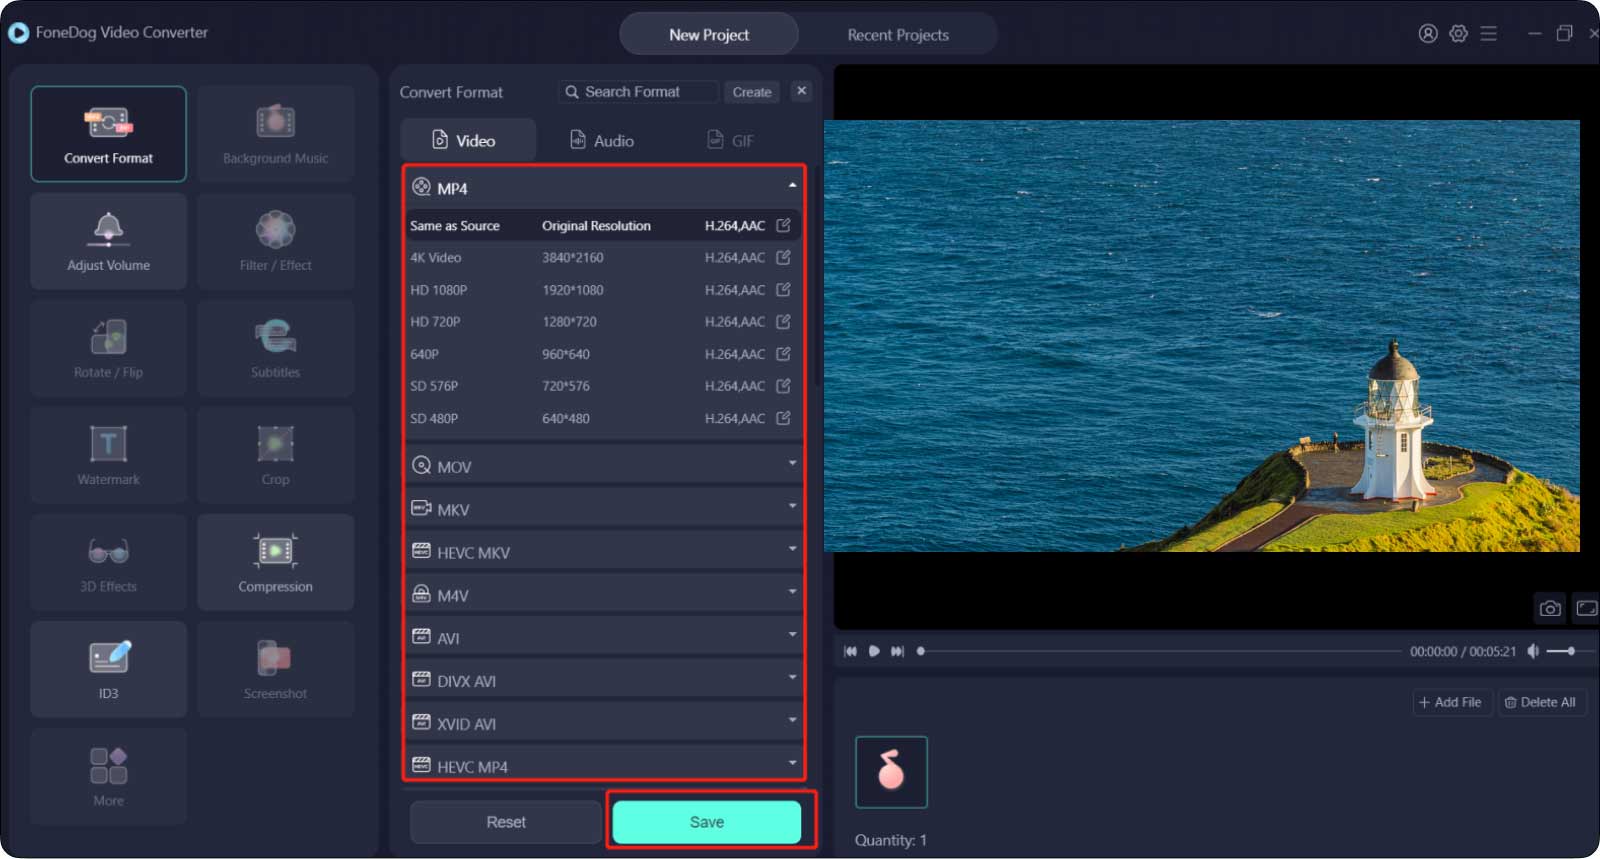 Come realizzare video a schermo intero utilizzando Fonedog Video Converter: scegli il formato